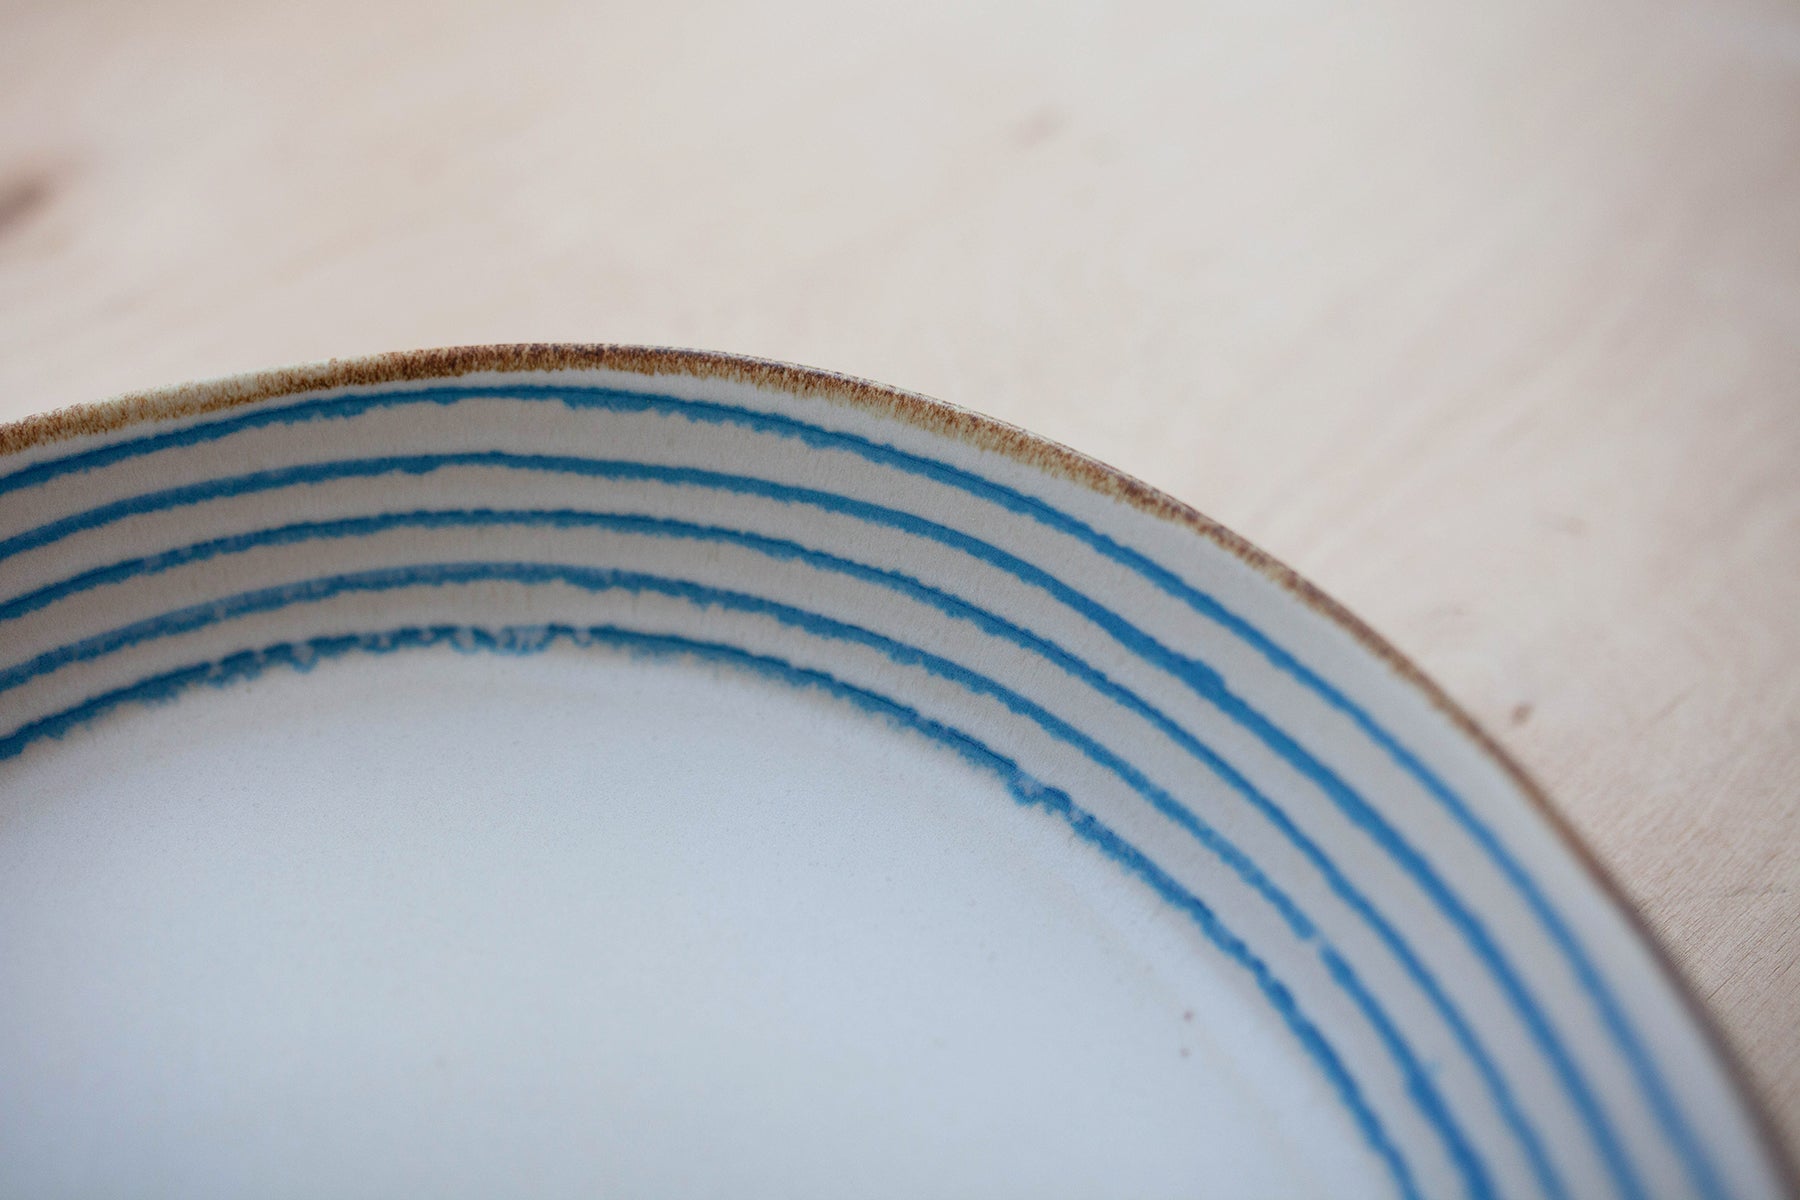 Feinkost Machado - Keramische serveerschaal draad blauw 32cm-Aardewerk-DutchMills